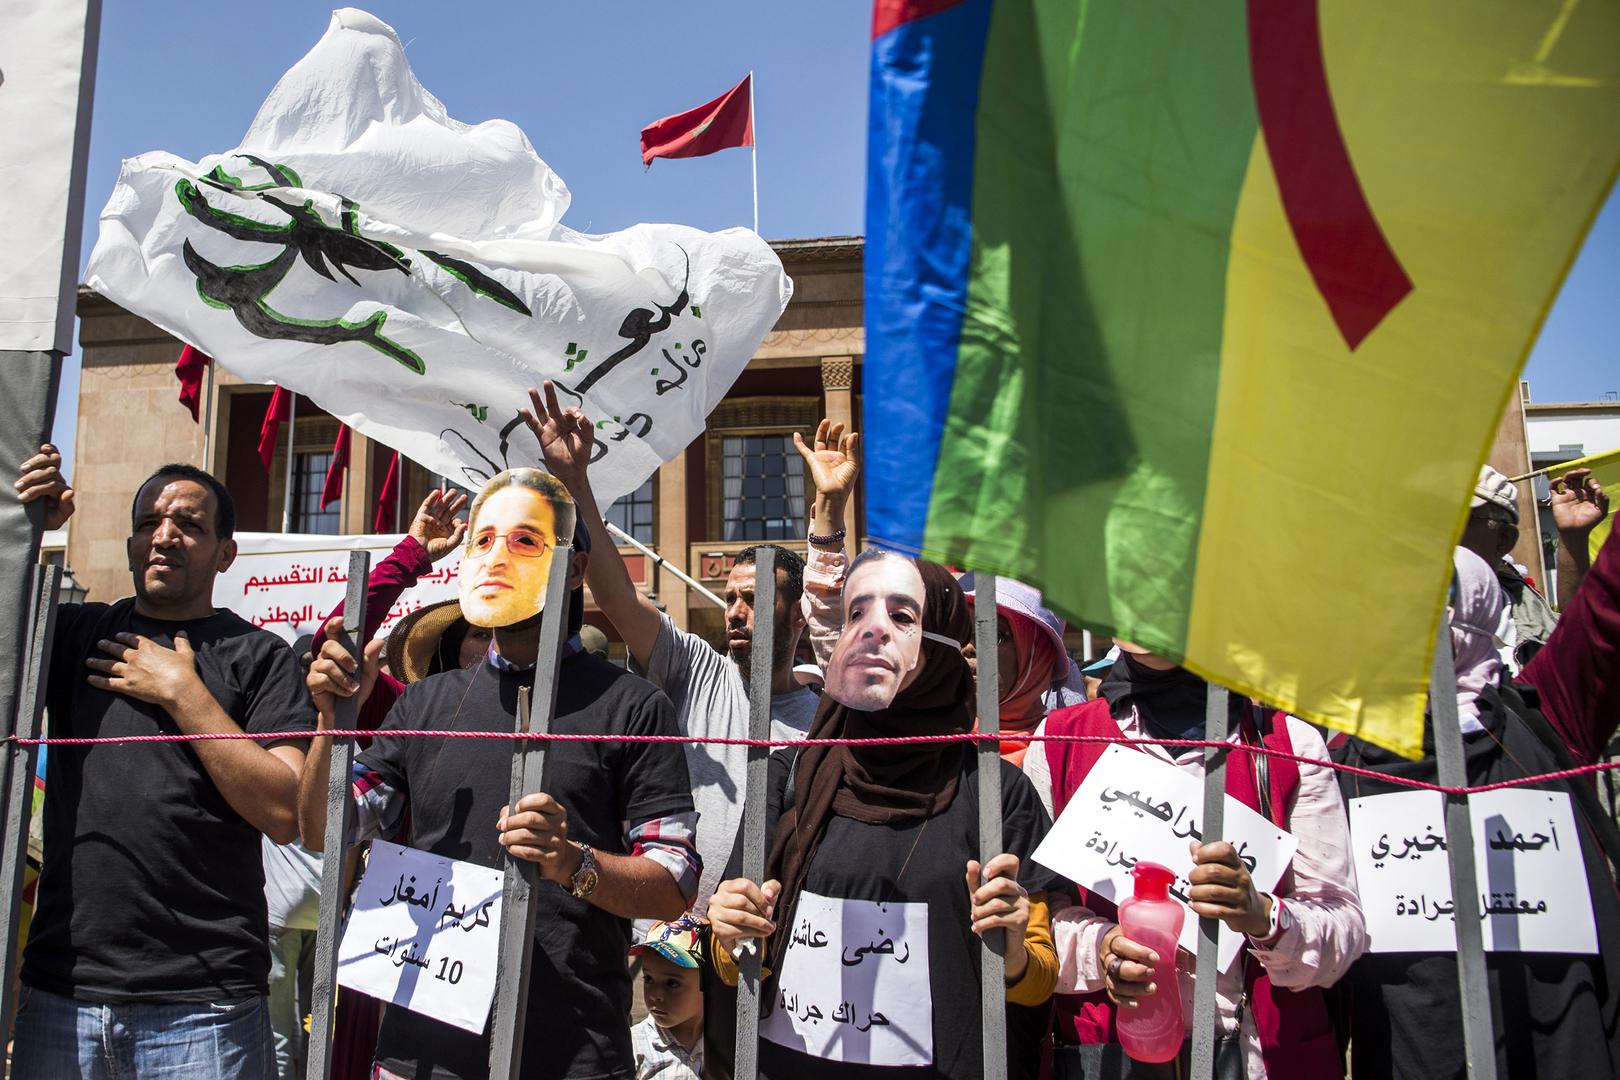 Rabat, Maroc, 15 juillet 2018 : Des manifestants arborent des masques à l’effigie d’activistes emprisonnés, pour protester contre leur condamnation à de lourdes peines de prison. © 2018 Fadel Senna/AFP/Getty Images